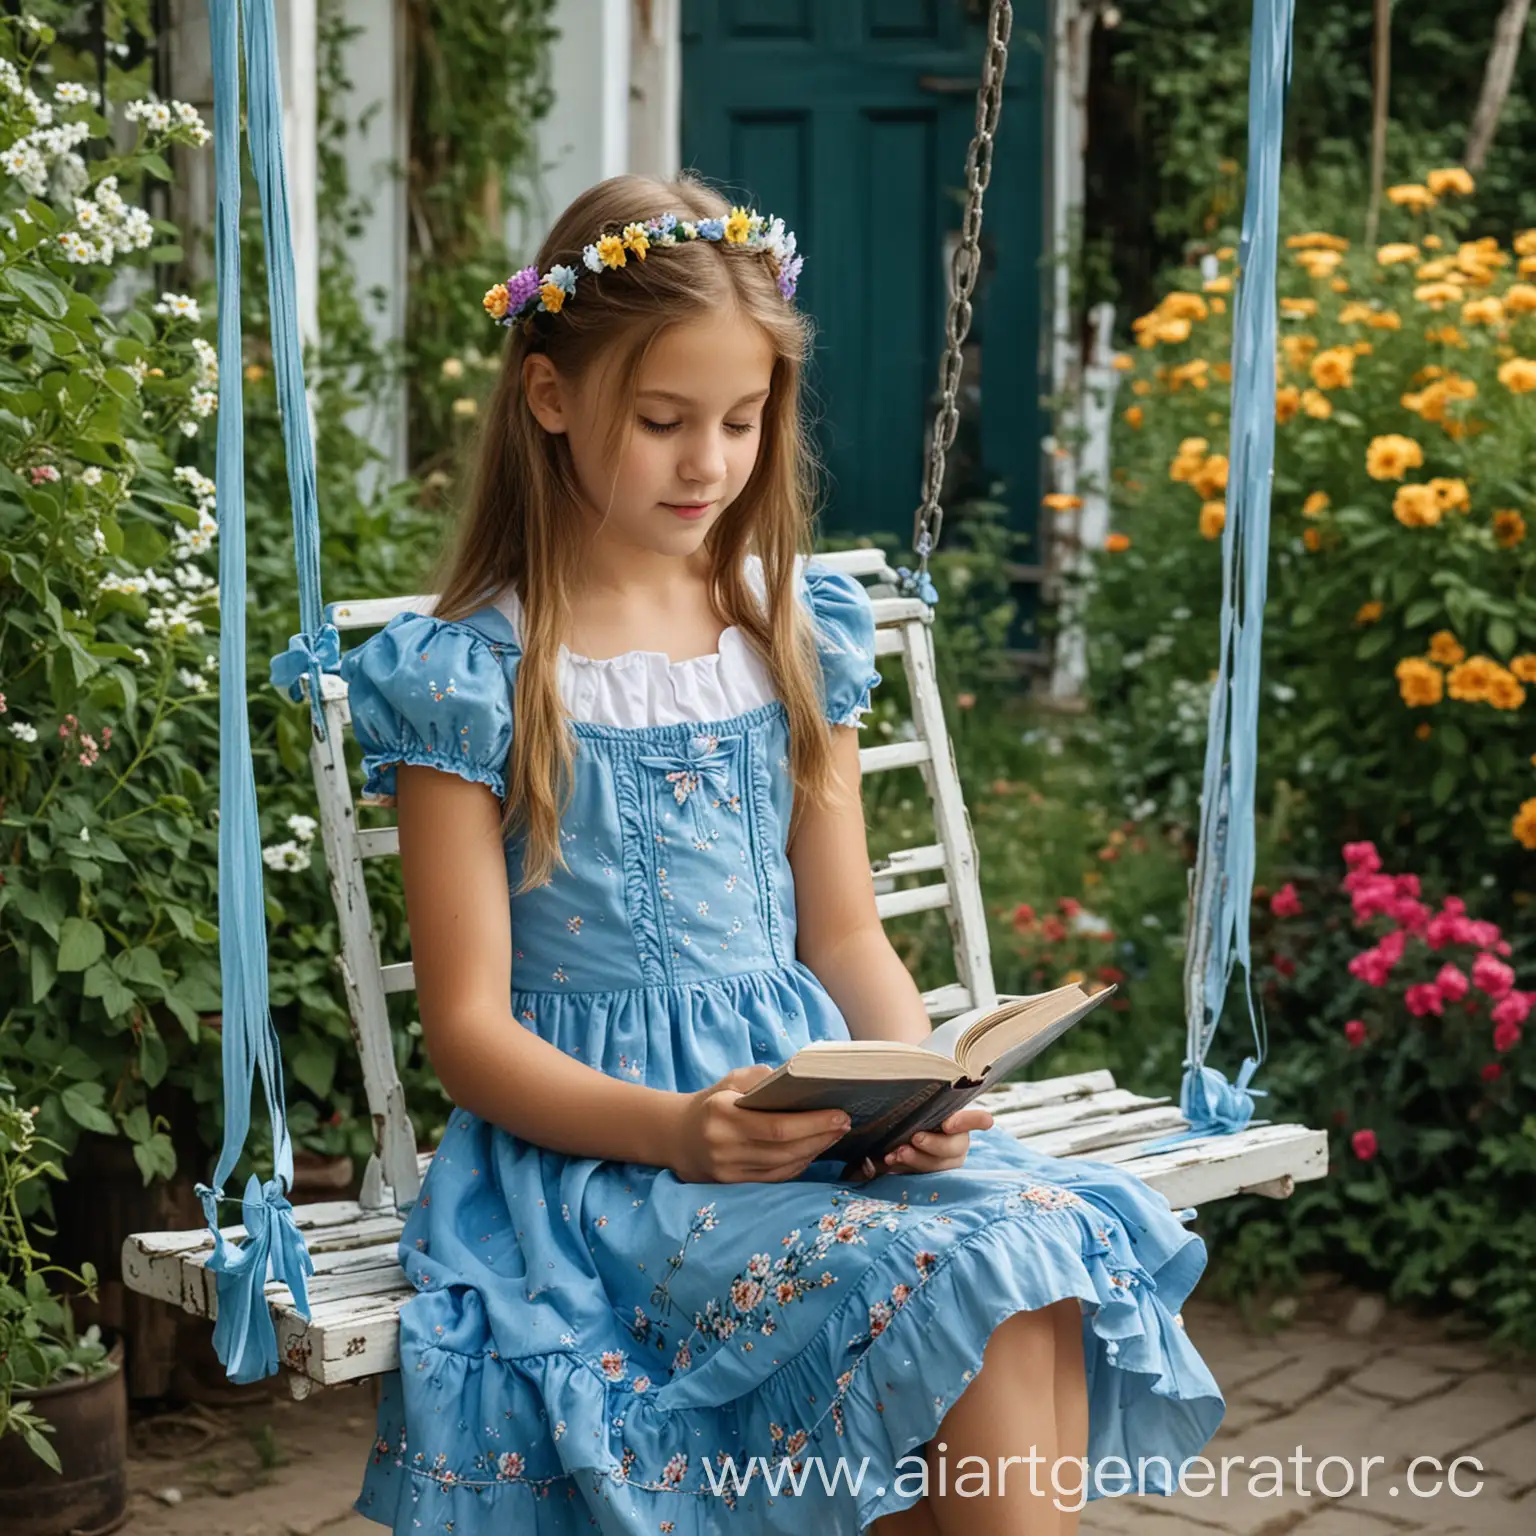 Girl-Reading-Book-on-Swings-in-Summer-Garden